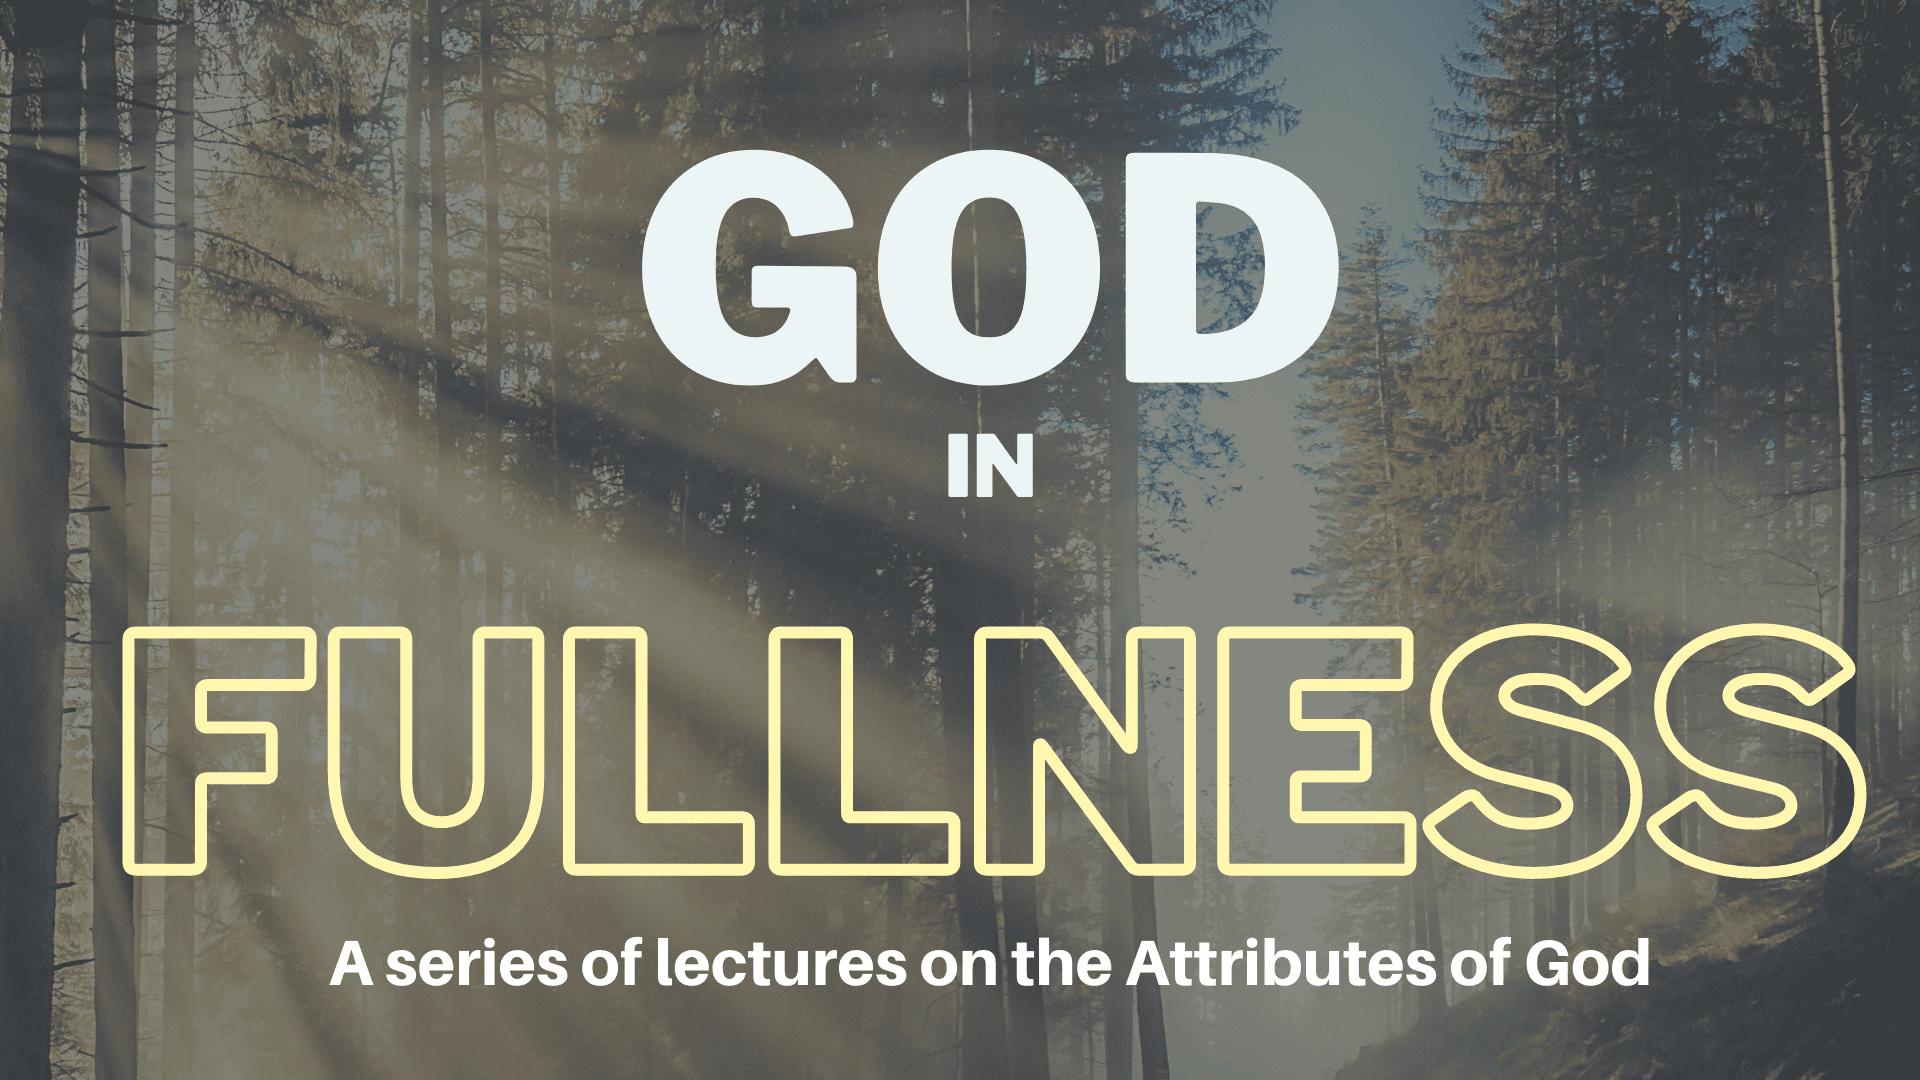 God in Fullness: The Love of God